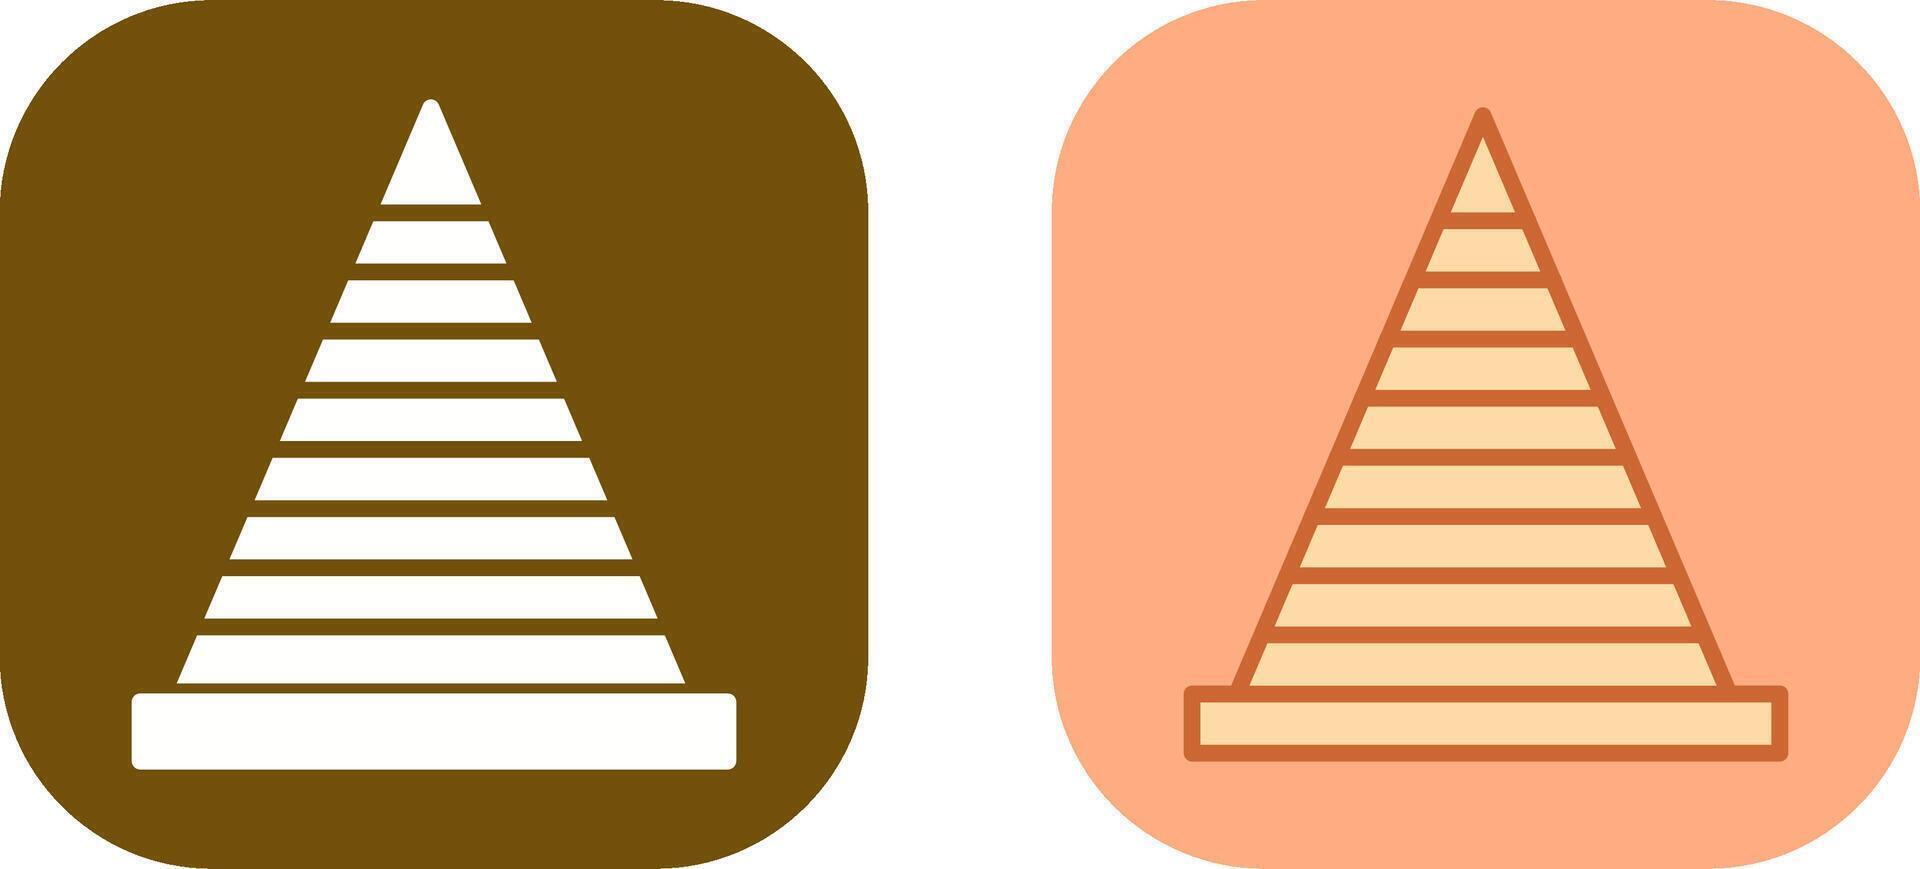 Traffic Cone Icon Design vector